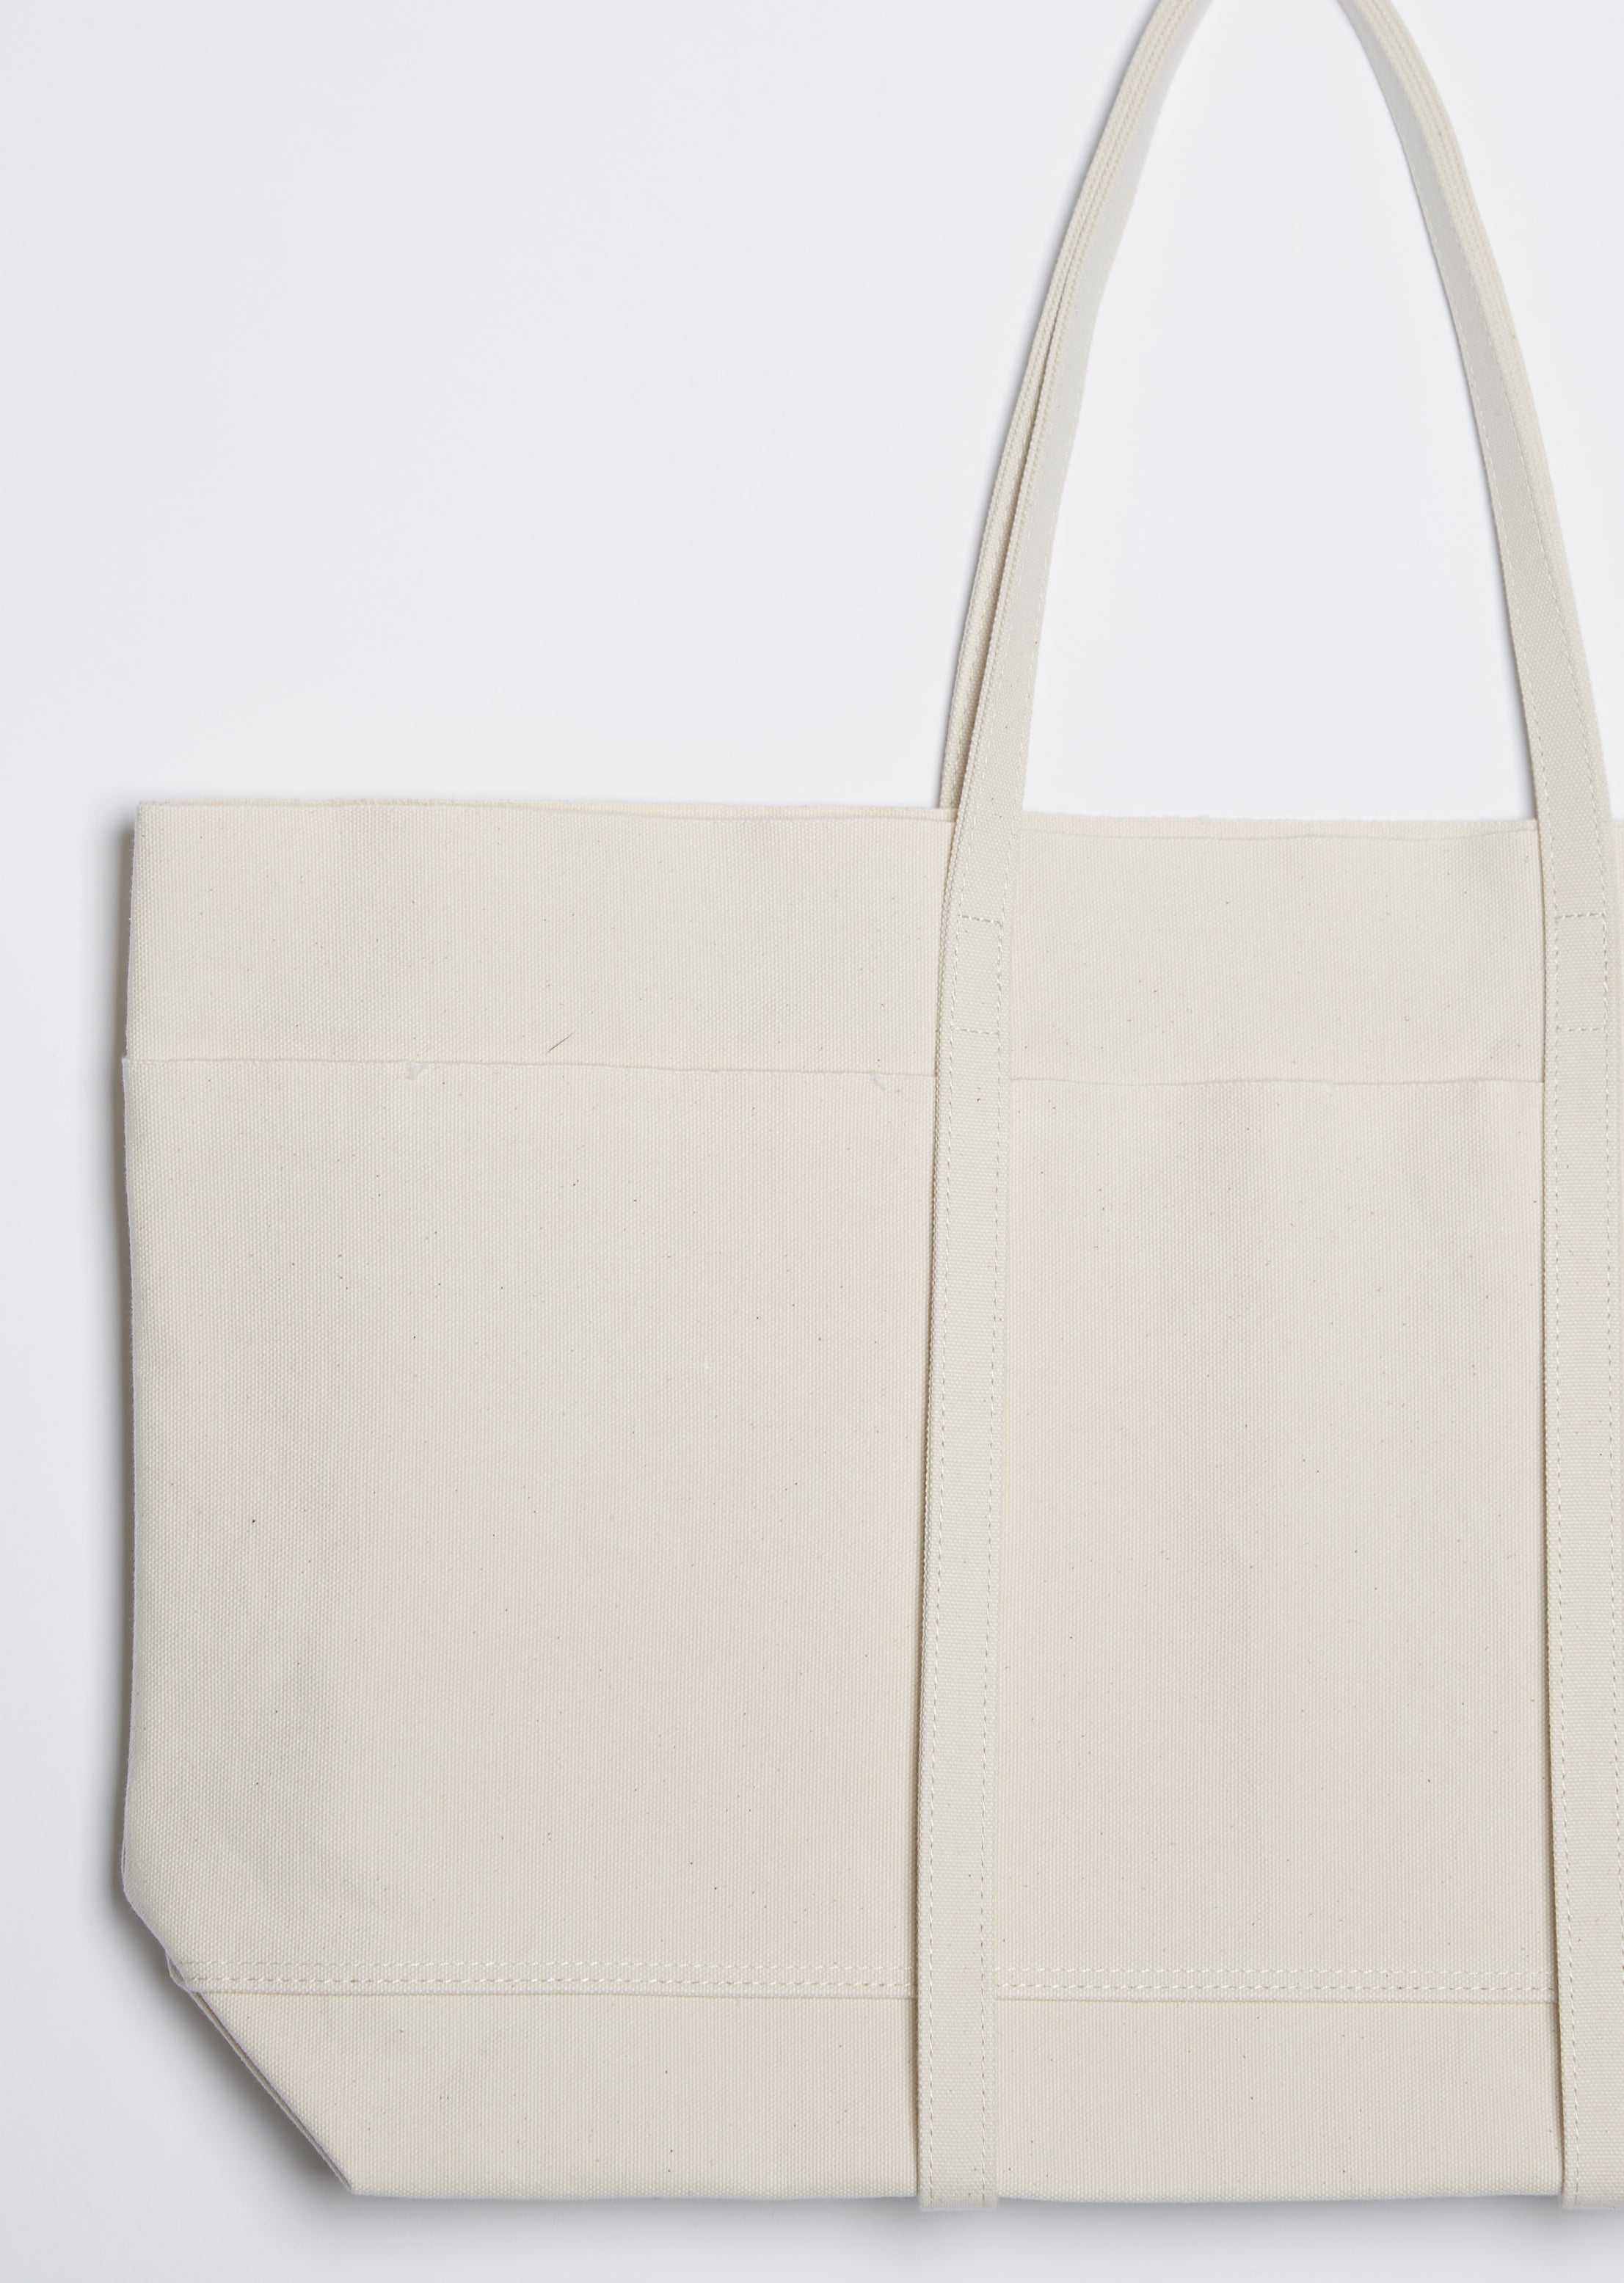 Chanel Chanel Coco Window Grey & White Canvas Tote Bag